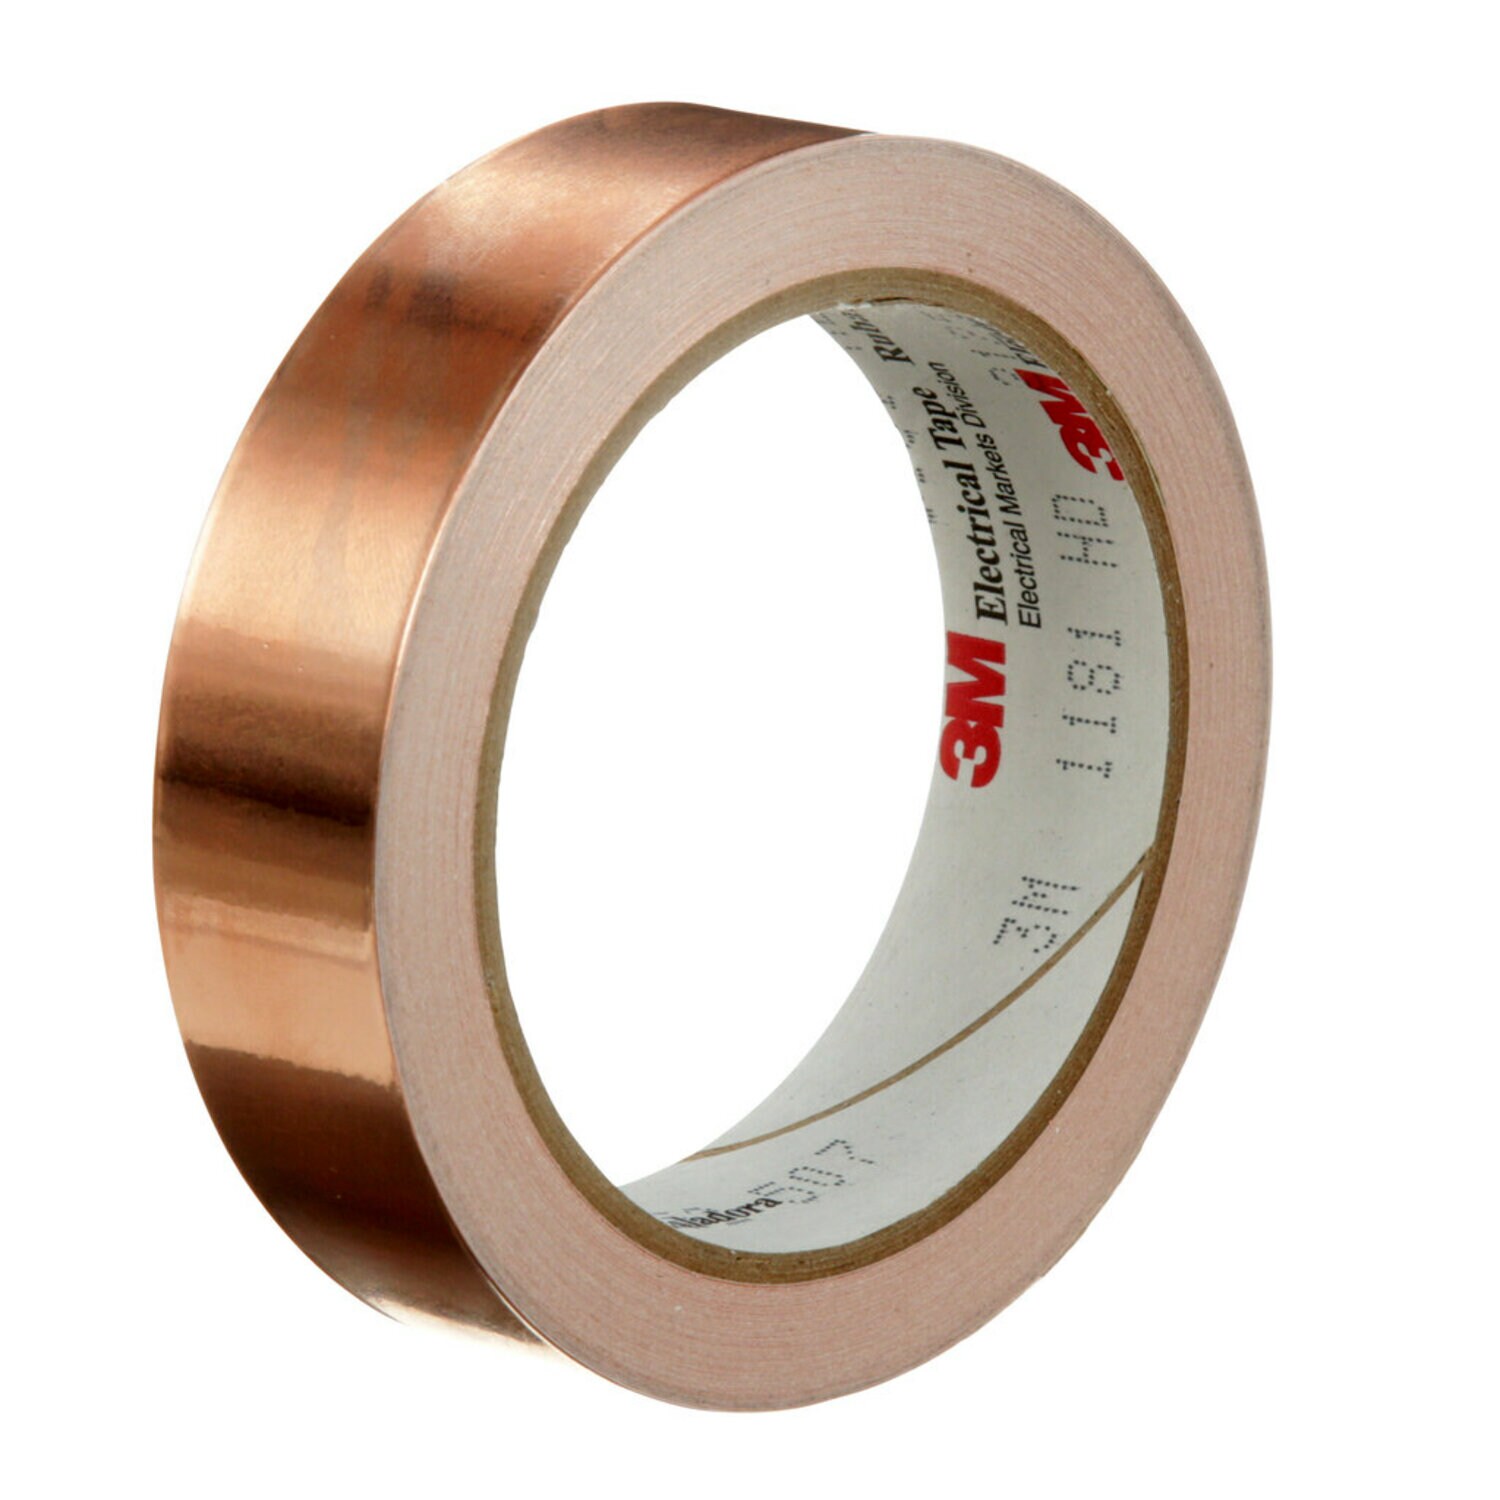 7000132169 - 3M EMI Copper Foil Shielding Tape 1181, 1 in x 18 yd (25,40 mm x 16,5
m), 9 per case